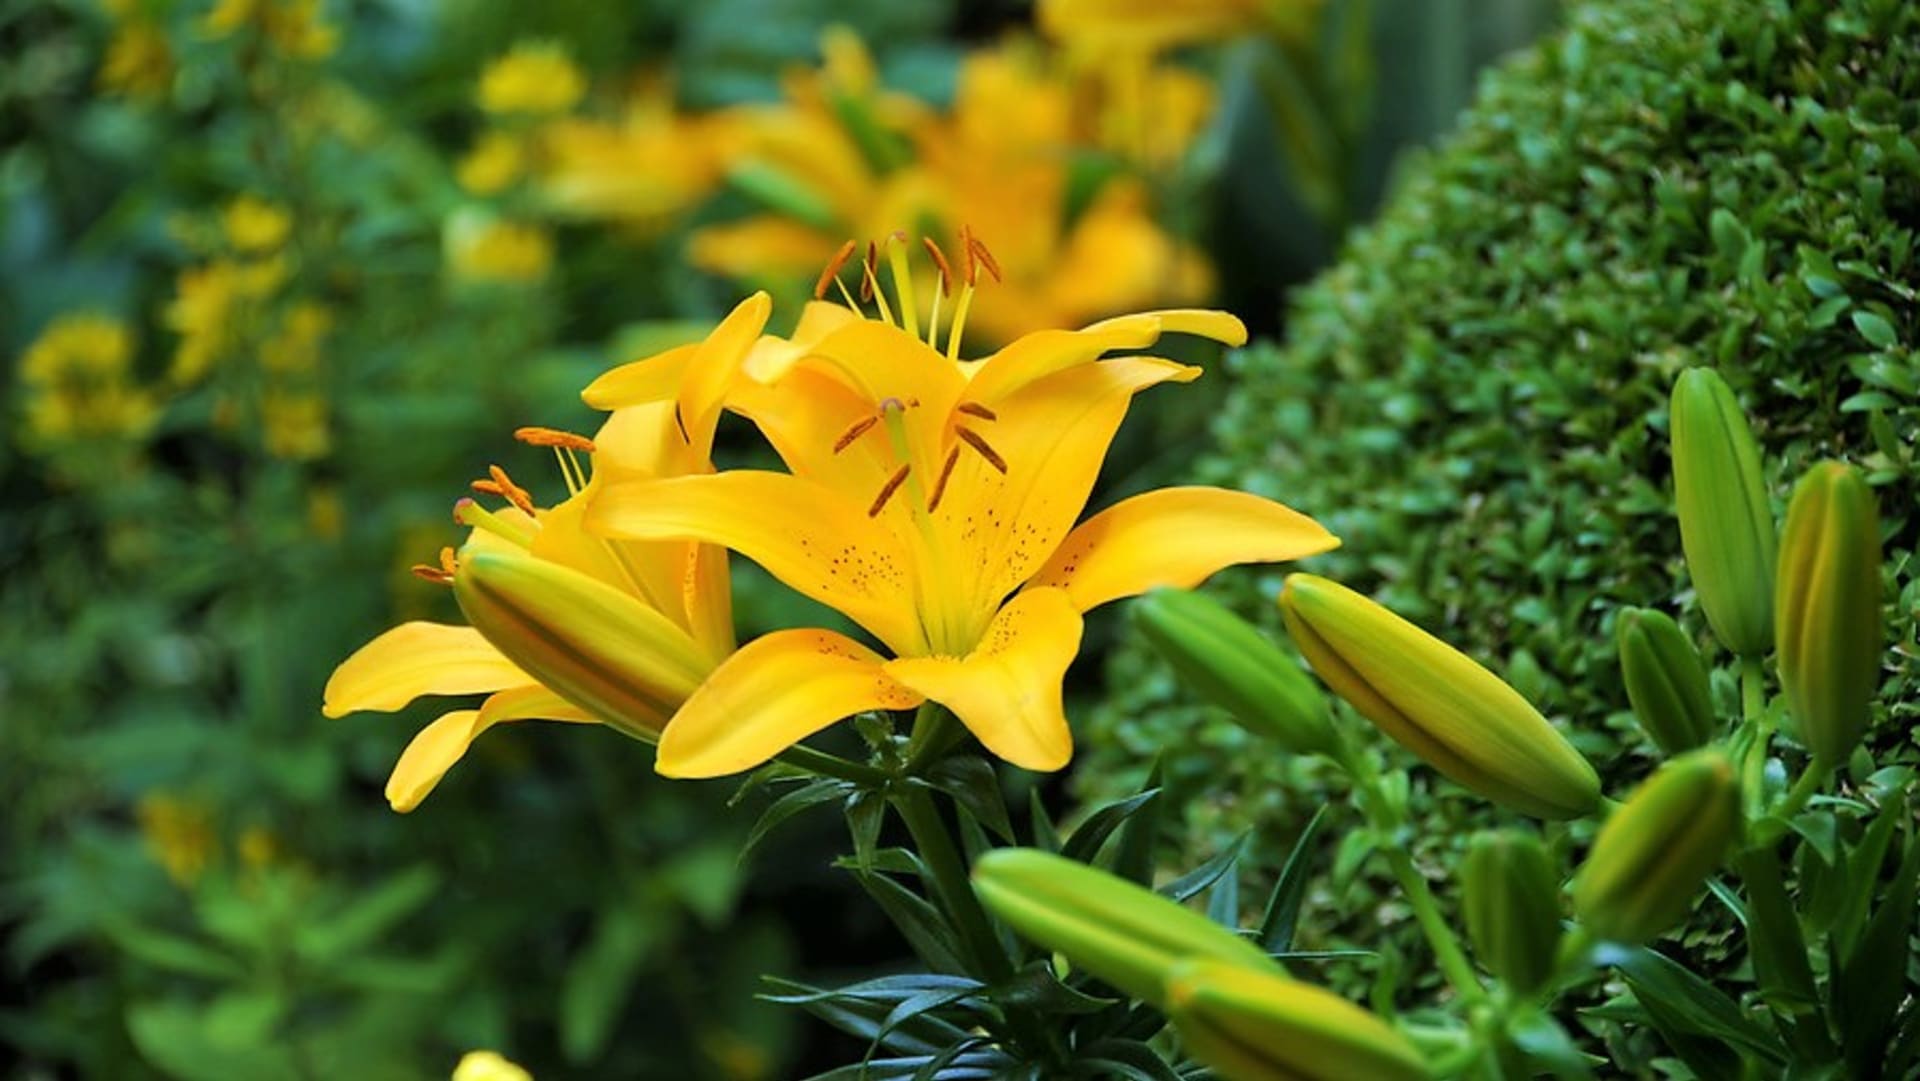 Asijské hybridní lilie jsou v plném květu dva až tři týdny, rozkvétají už v červnu. Voní jenom lehounce. Na snímku kultivar Yellow Baby .